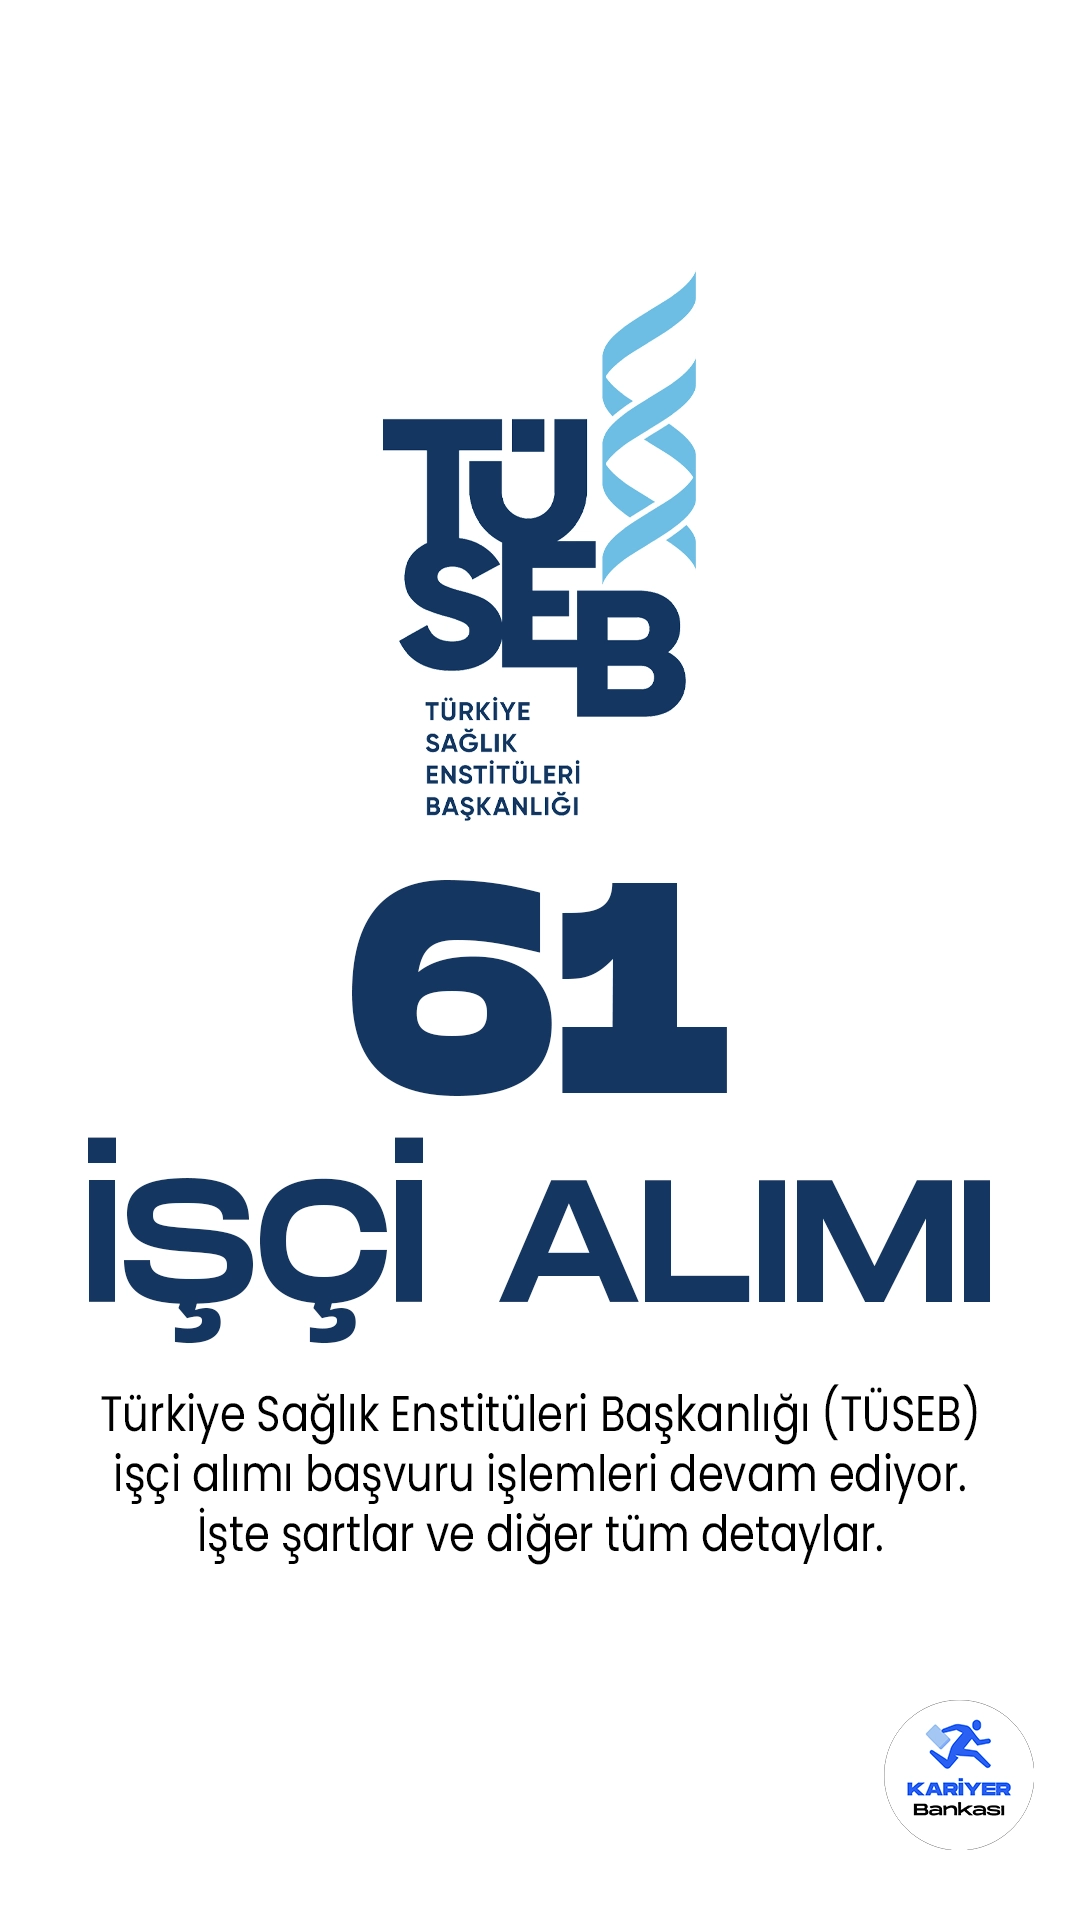 Türkiye Sağlık Enstitüleri Başkanlığı (TÜSEB) işçi alımı başvuru işlemleri devam ediyor. İlgili alım duyurusu Cumhurbaşkanlığı SBB'de yayımlanmış, TÜSEB'e Ar-Ge uzmanı unvanında 61 işçi alımı yapılacağına yer verilmişti. Başvurular 19 Mayıs 2023 tarihine kadar alınacak. Başvuru yapacak adayların şartları dikkatle incelemesi gerekmektedir.